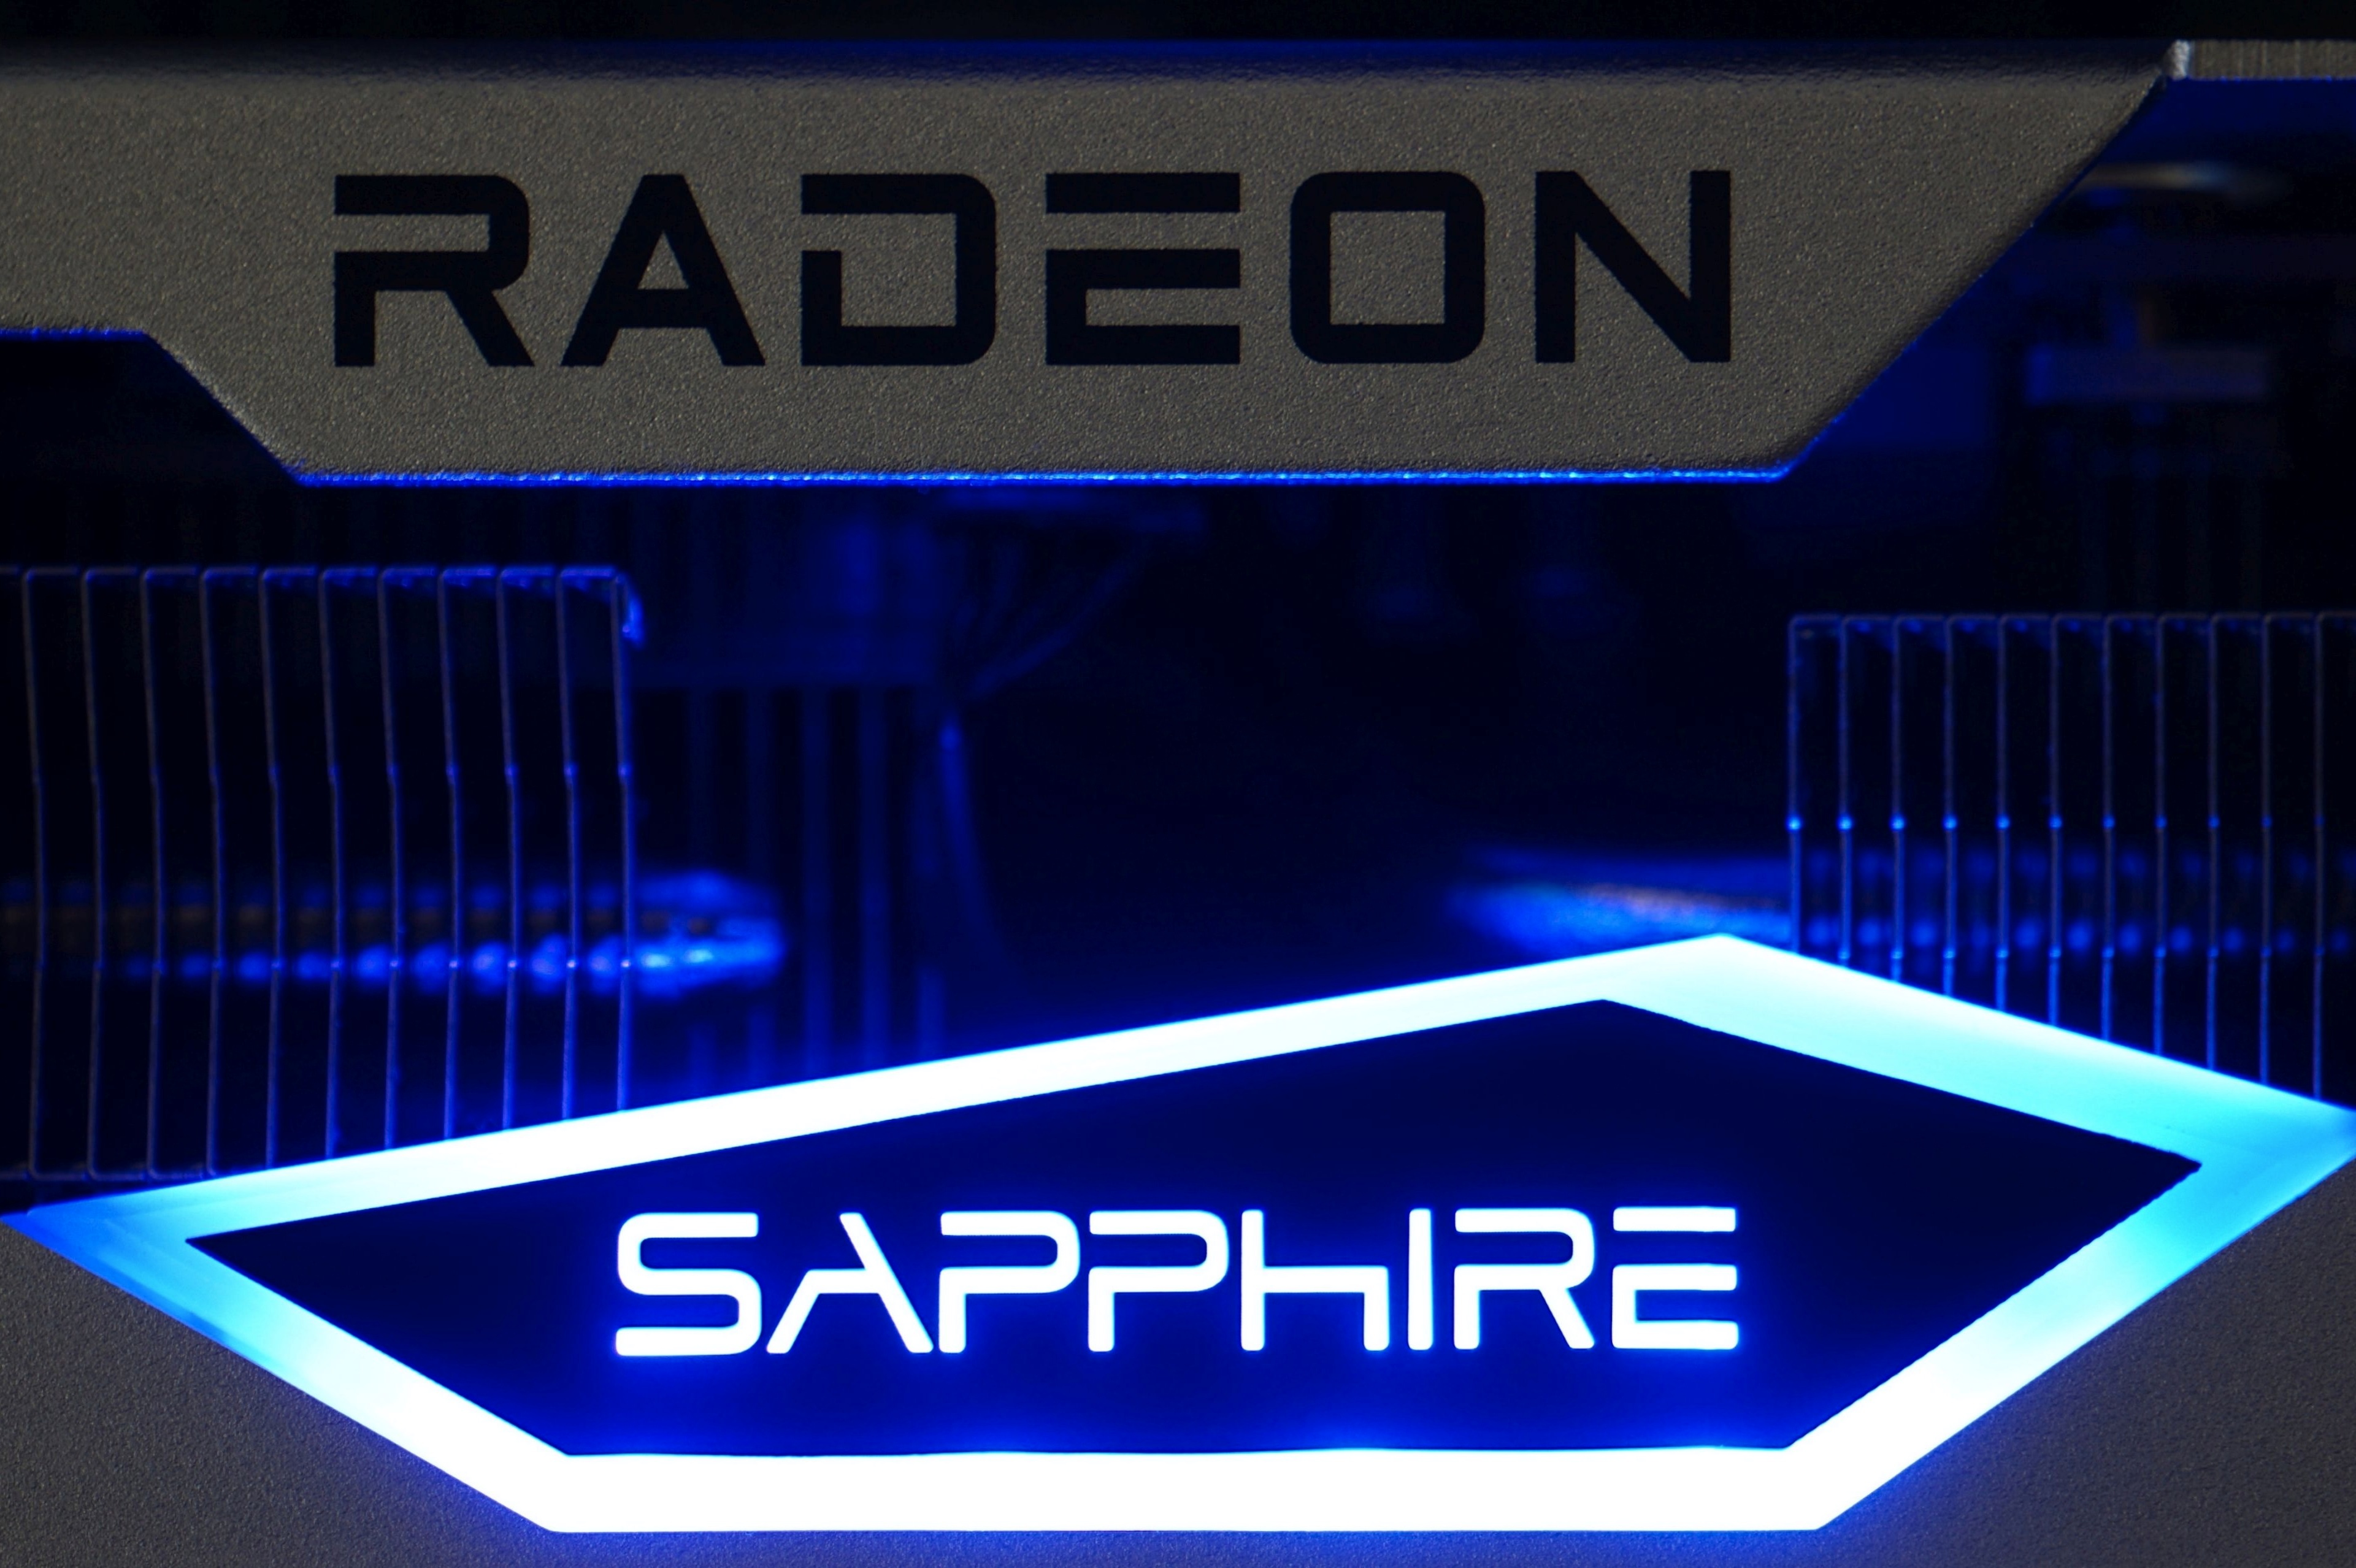 MSI Radeon RX 6650 XT Gaming X Review - Ray Tracing